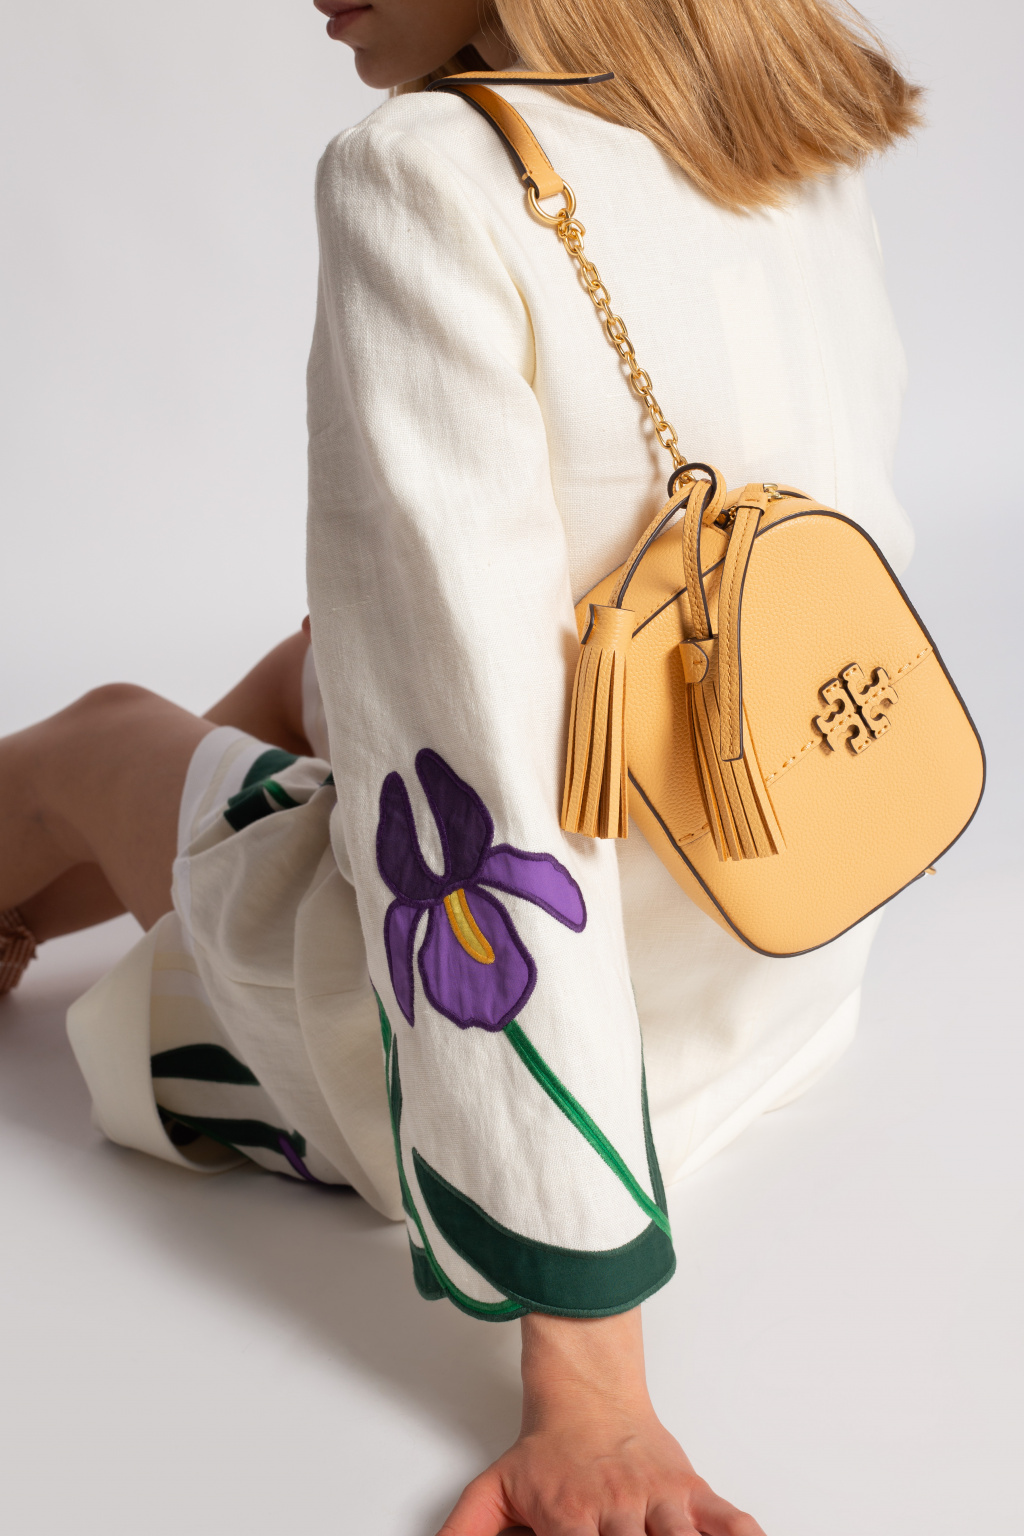 Tory Burch Crossbody Bag mit Brand-Detail (schwarz) online kaufen